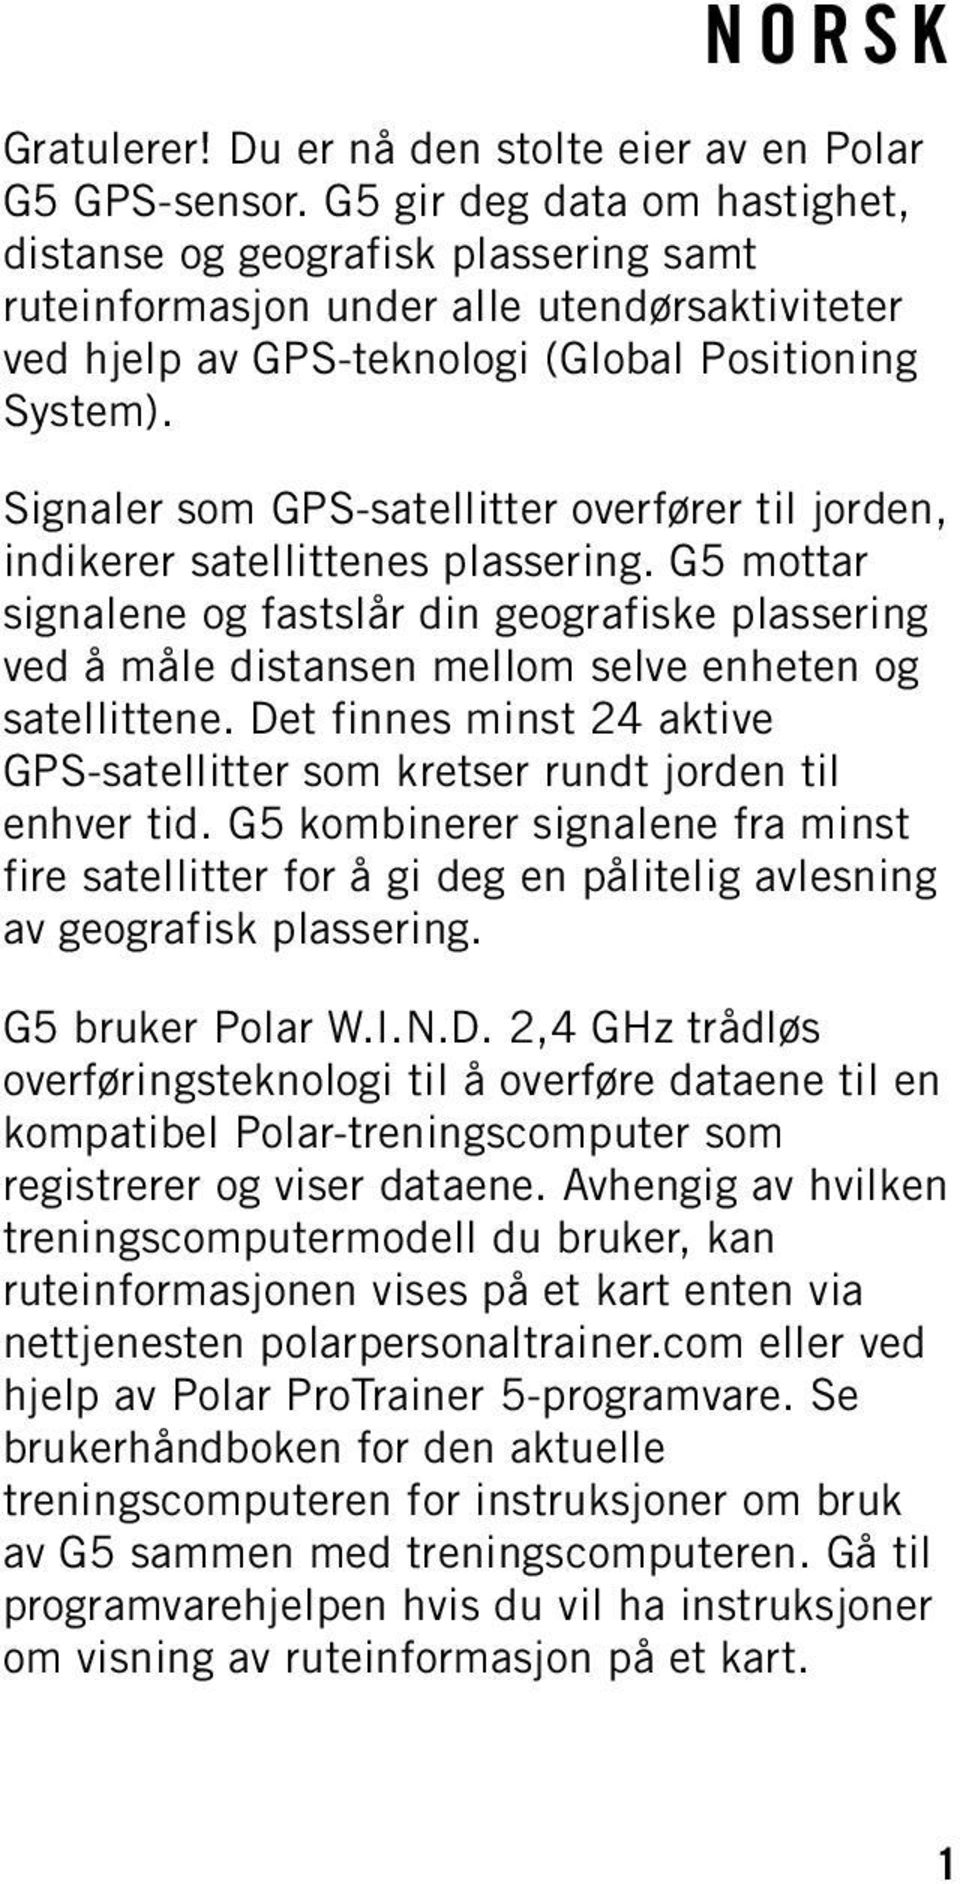 Signaler som GPS-satellitter overfører til jorden, indikerer satellittenes plassering.